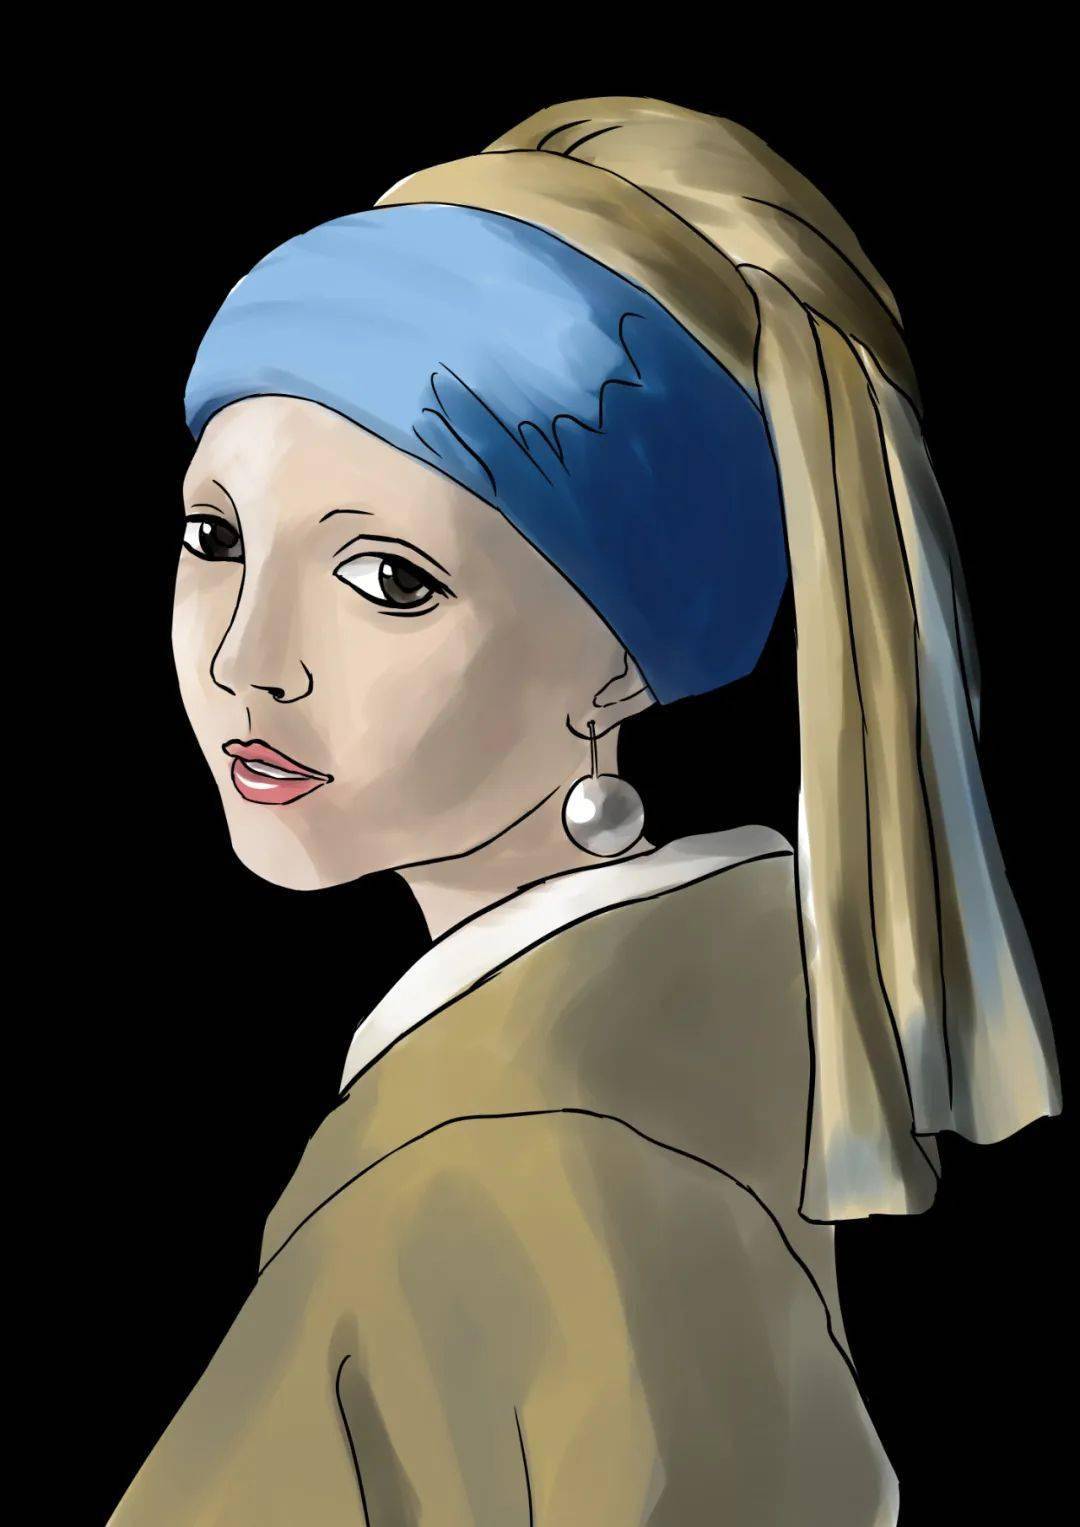 笠娘 微博@哥特萝笠 创作思路:画了一个卡通版的《戴珍珠耳环的少女》